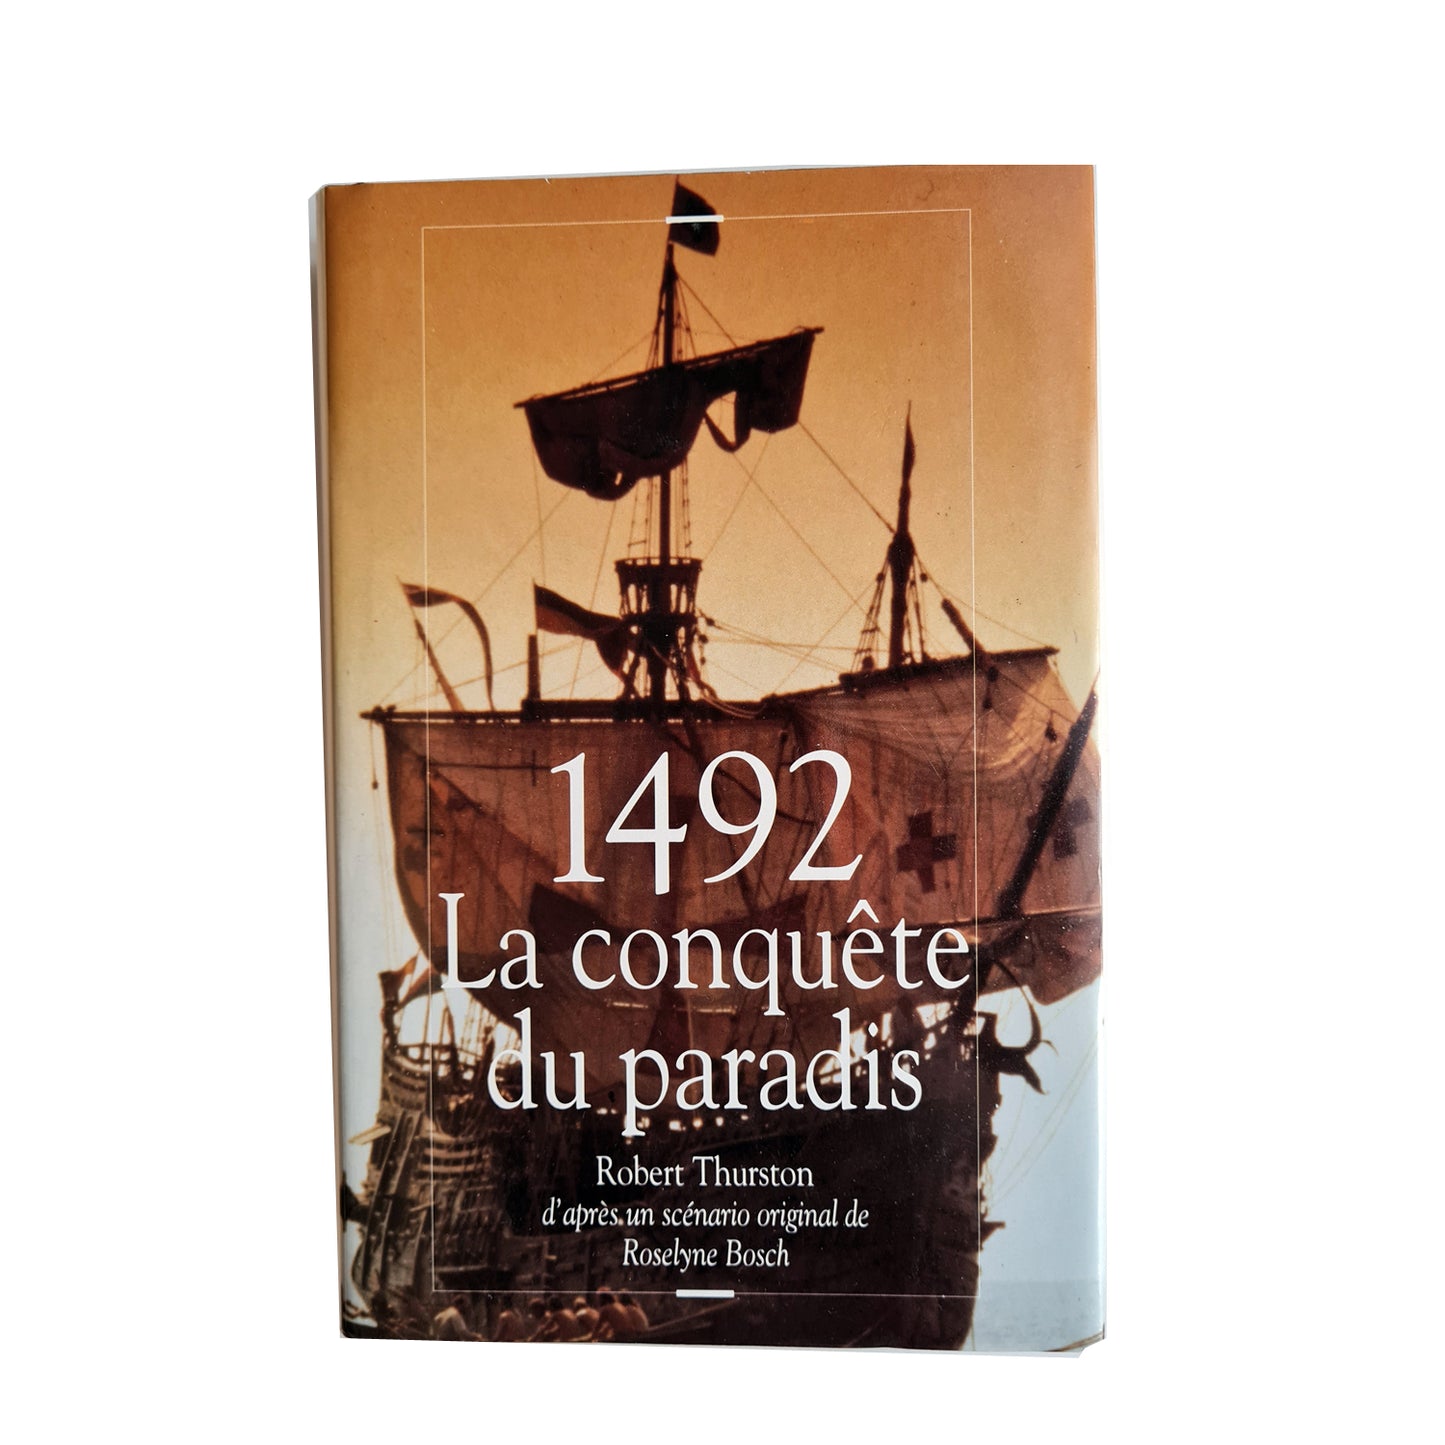 1492 La conquête du paradis